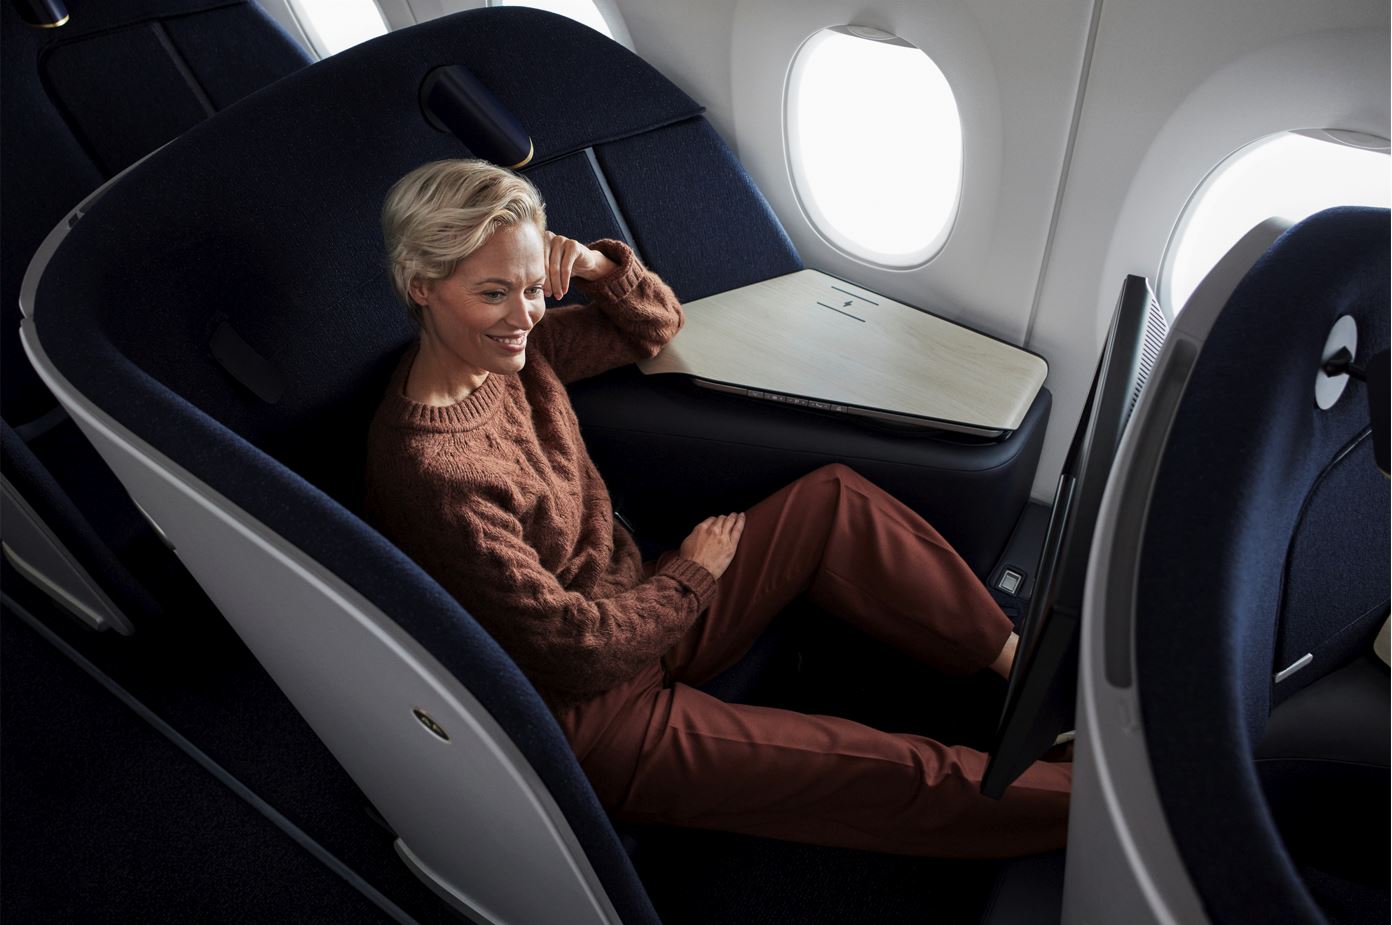 Finnar A350 Business Class Woman.